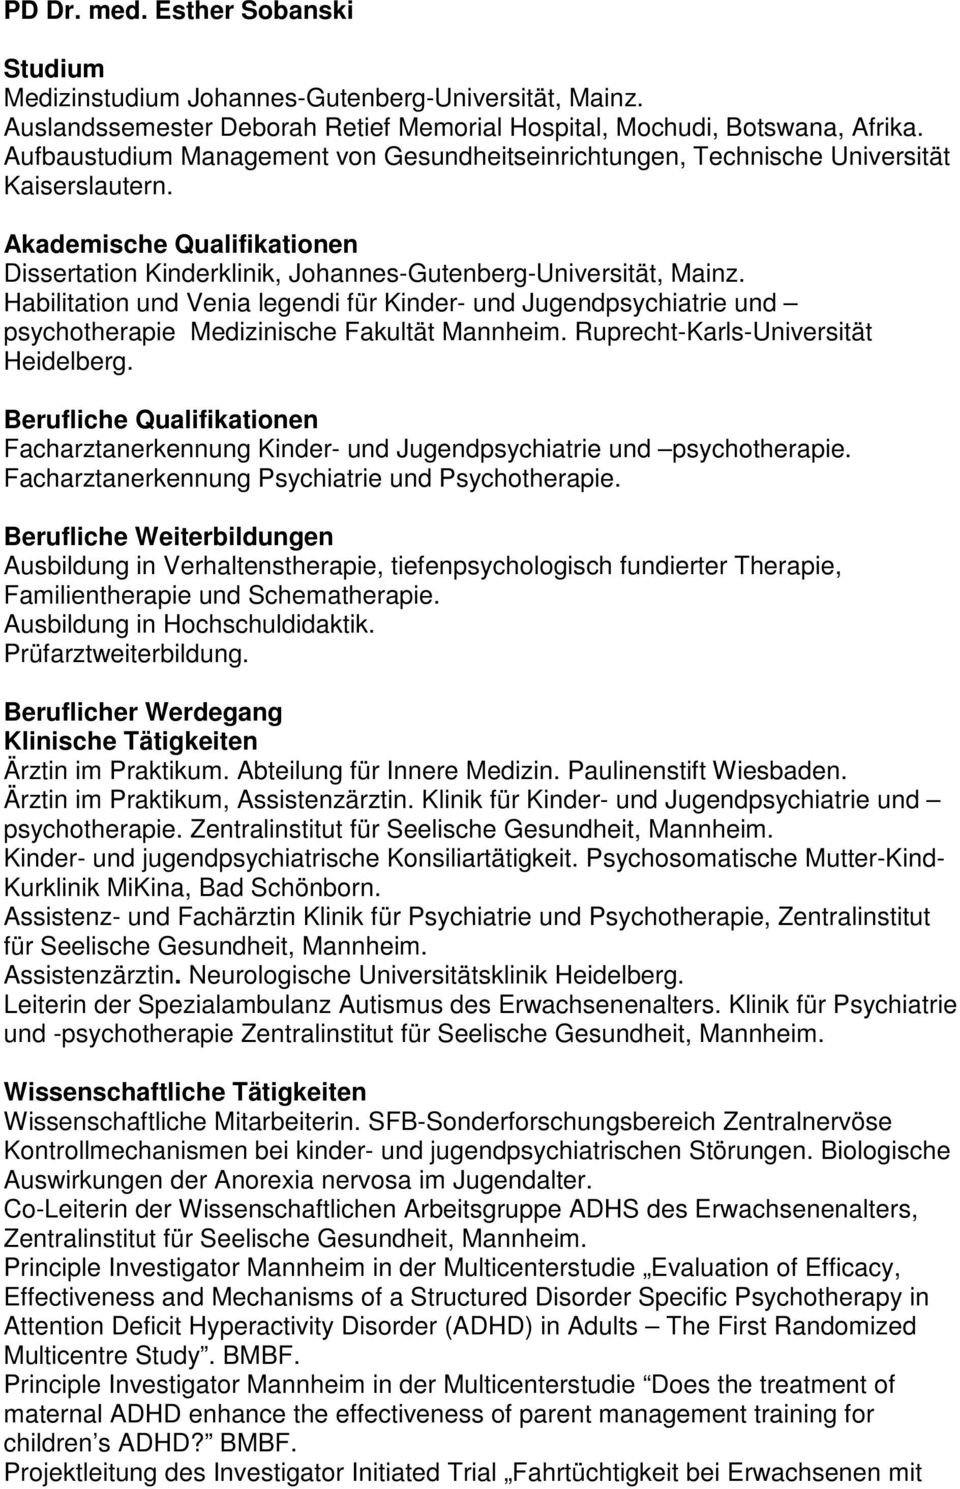 Habilitation und Venia legendi für Kinder- und Jugendpsychiatrie und psychotherapie Medizinische Fakultät Mannheim. Ruprecht-Karls-Universität Heidelberg.